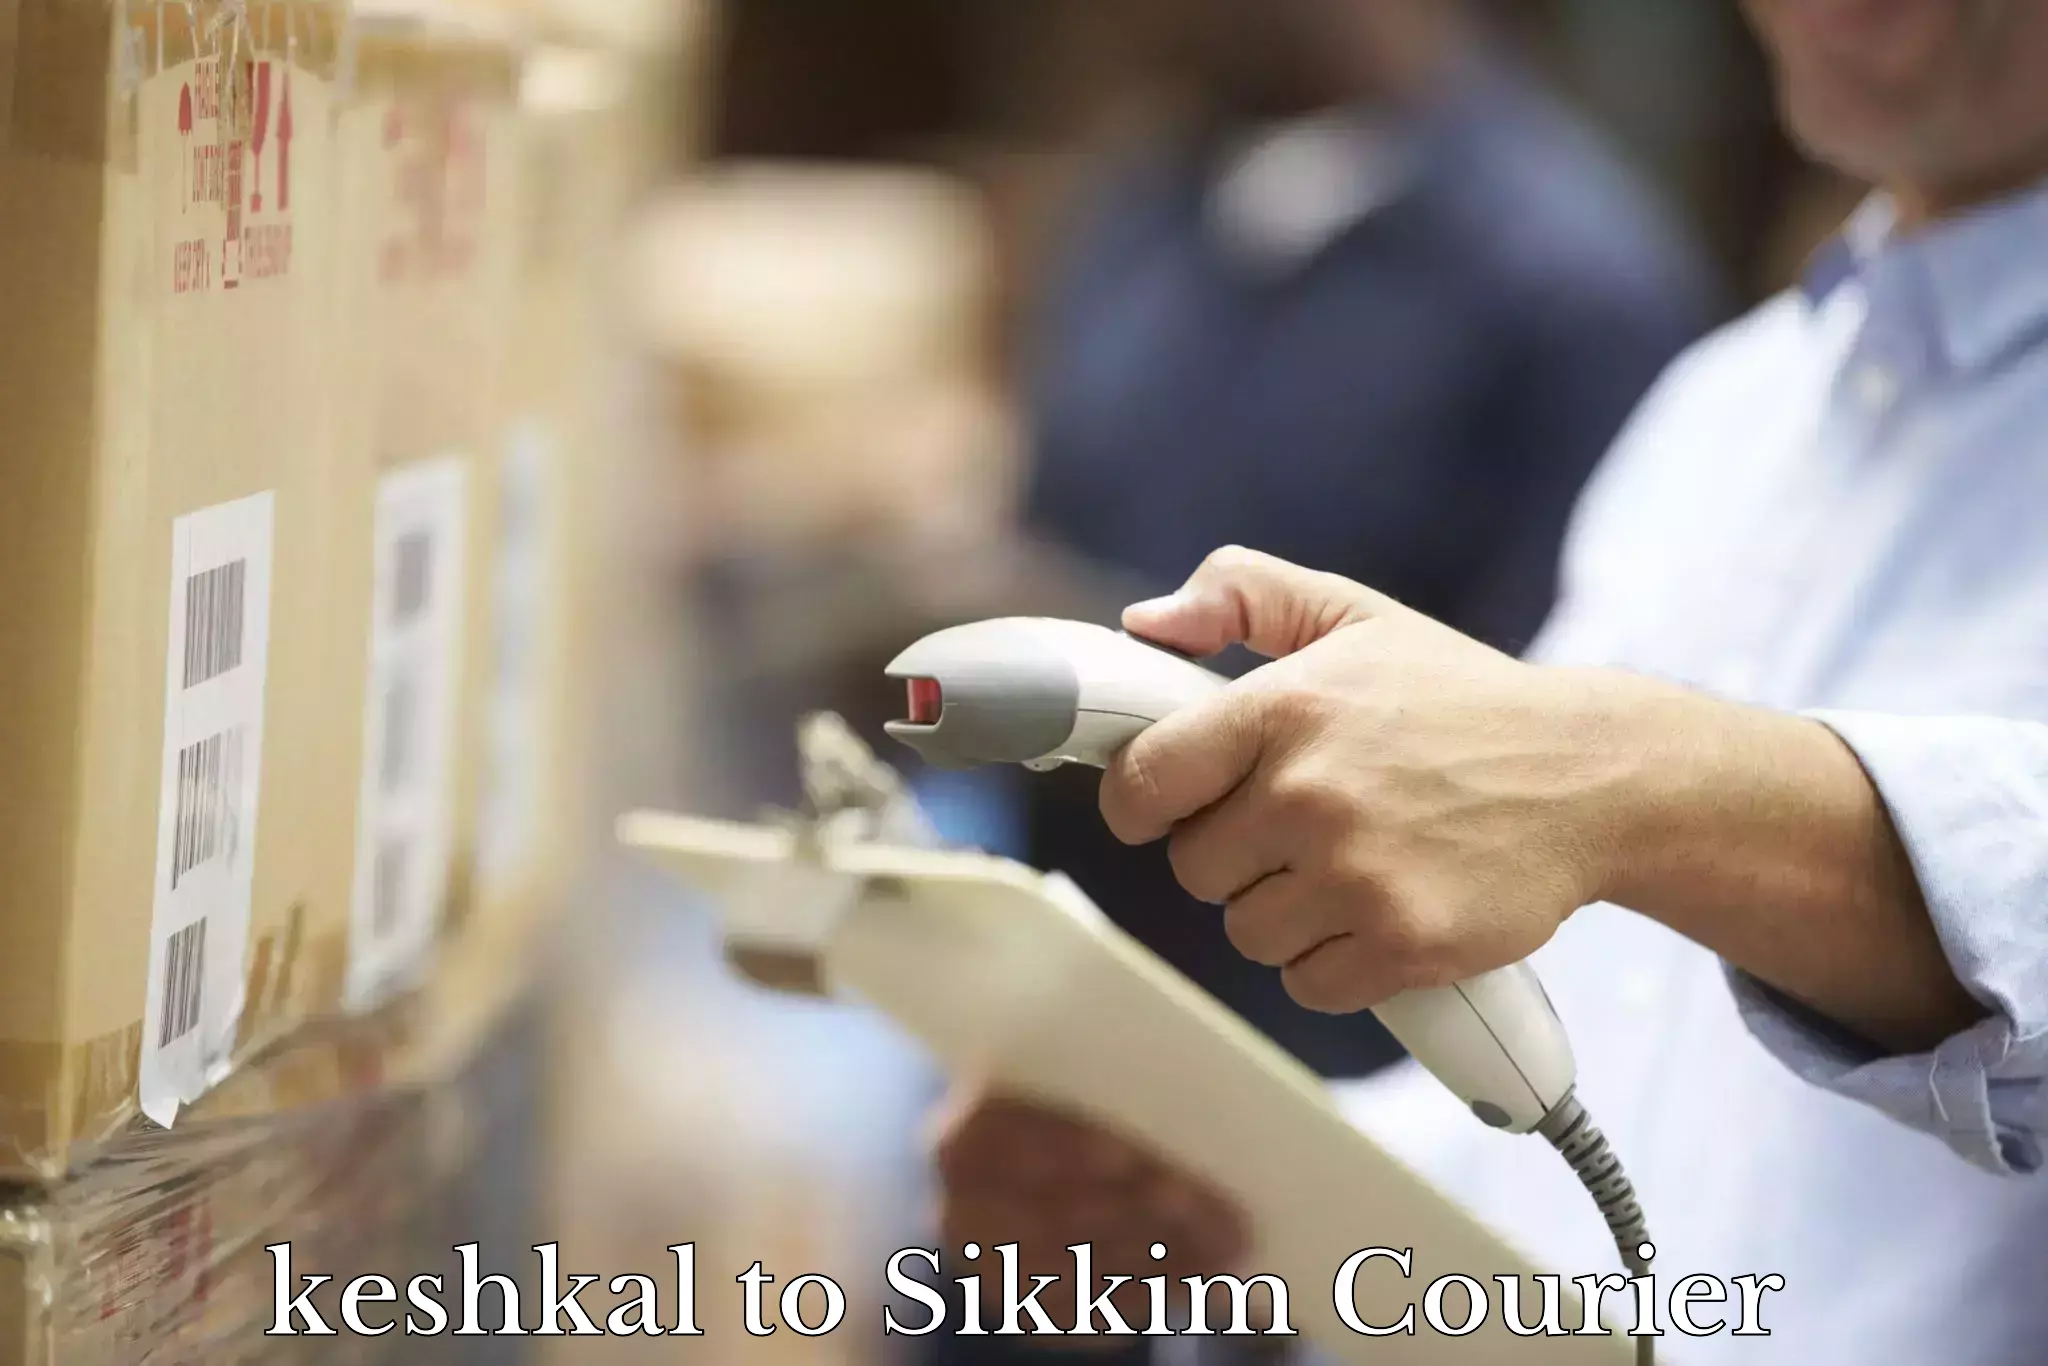 Courier service comparison keshkal to Gangtok